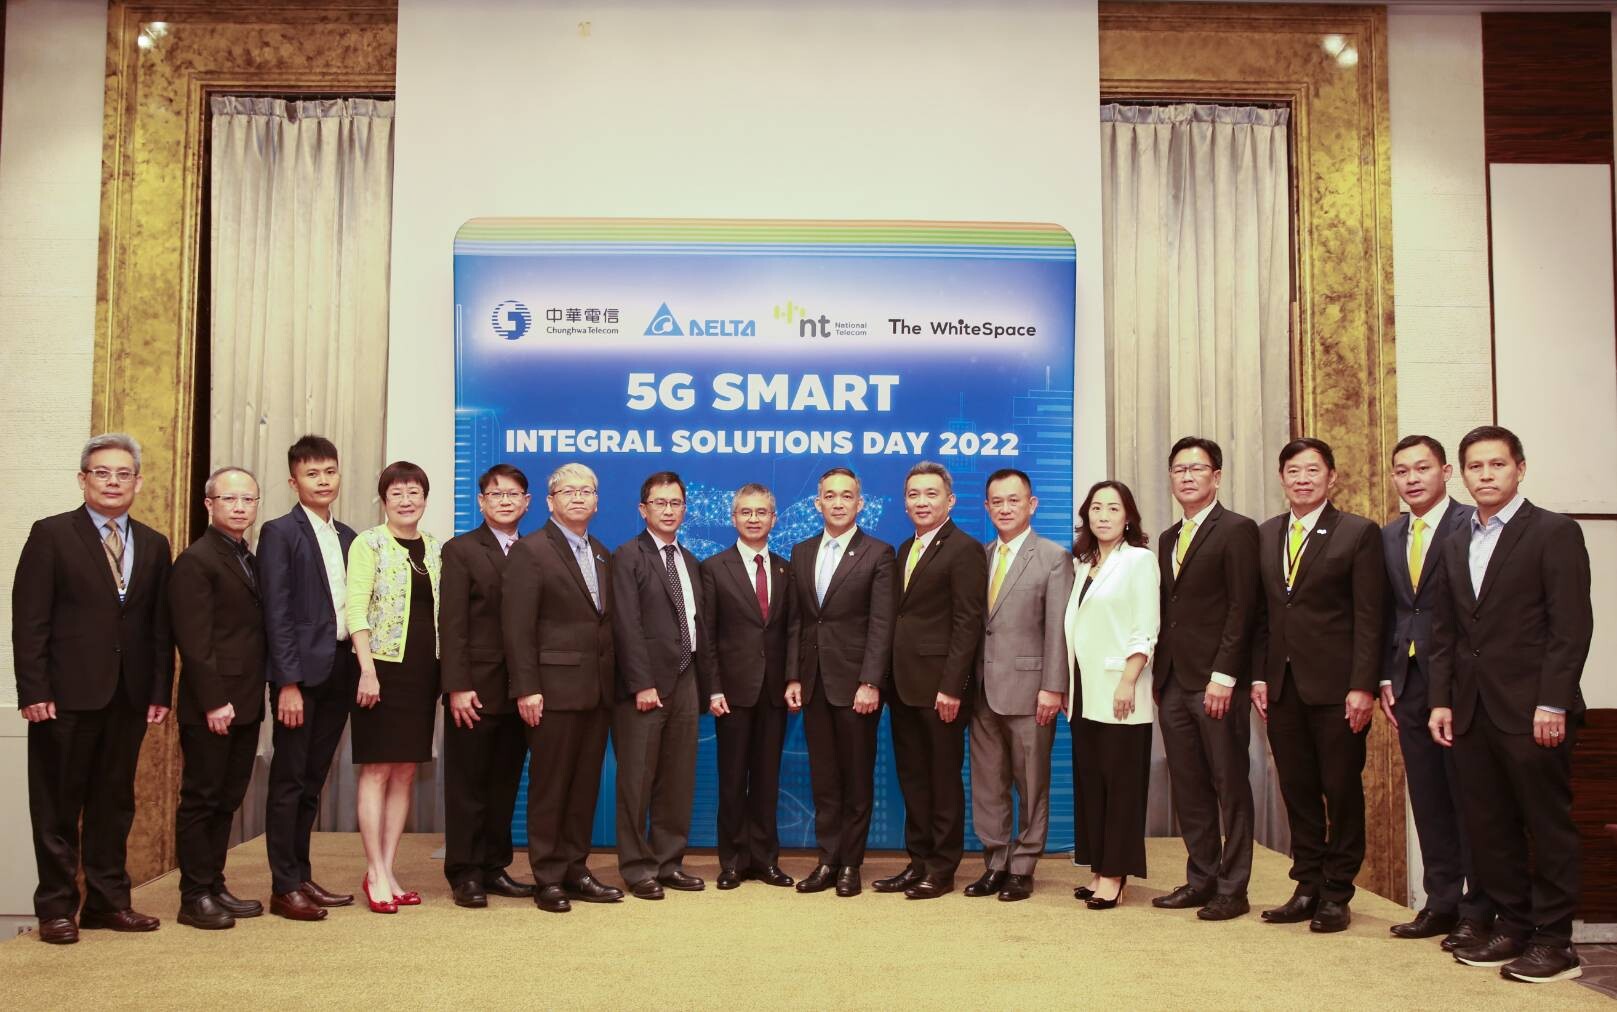 จุงหวา เทเลคอม ผนึก NT และเดอะ ไวท์สเปซ ดันเดลต้าประเทศไทยสู่ Digital transformationสร้าง 5G Enterprise Private Network ในโรงงานเดลต้า ประเทศไทย